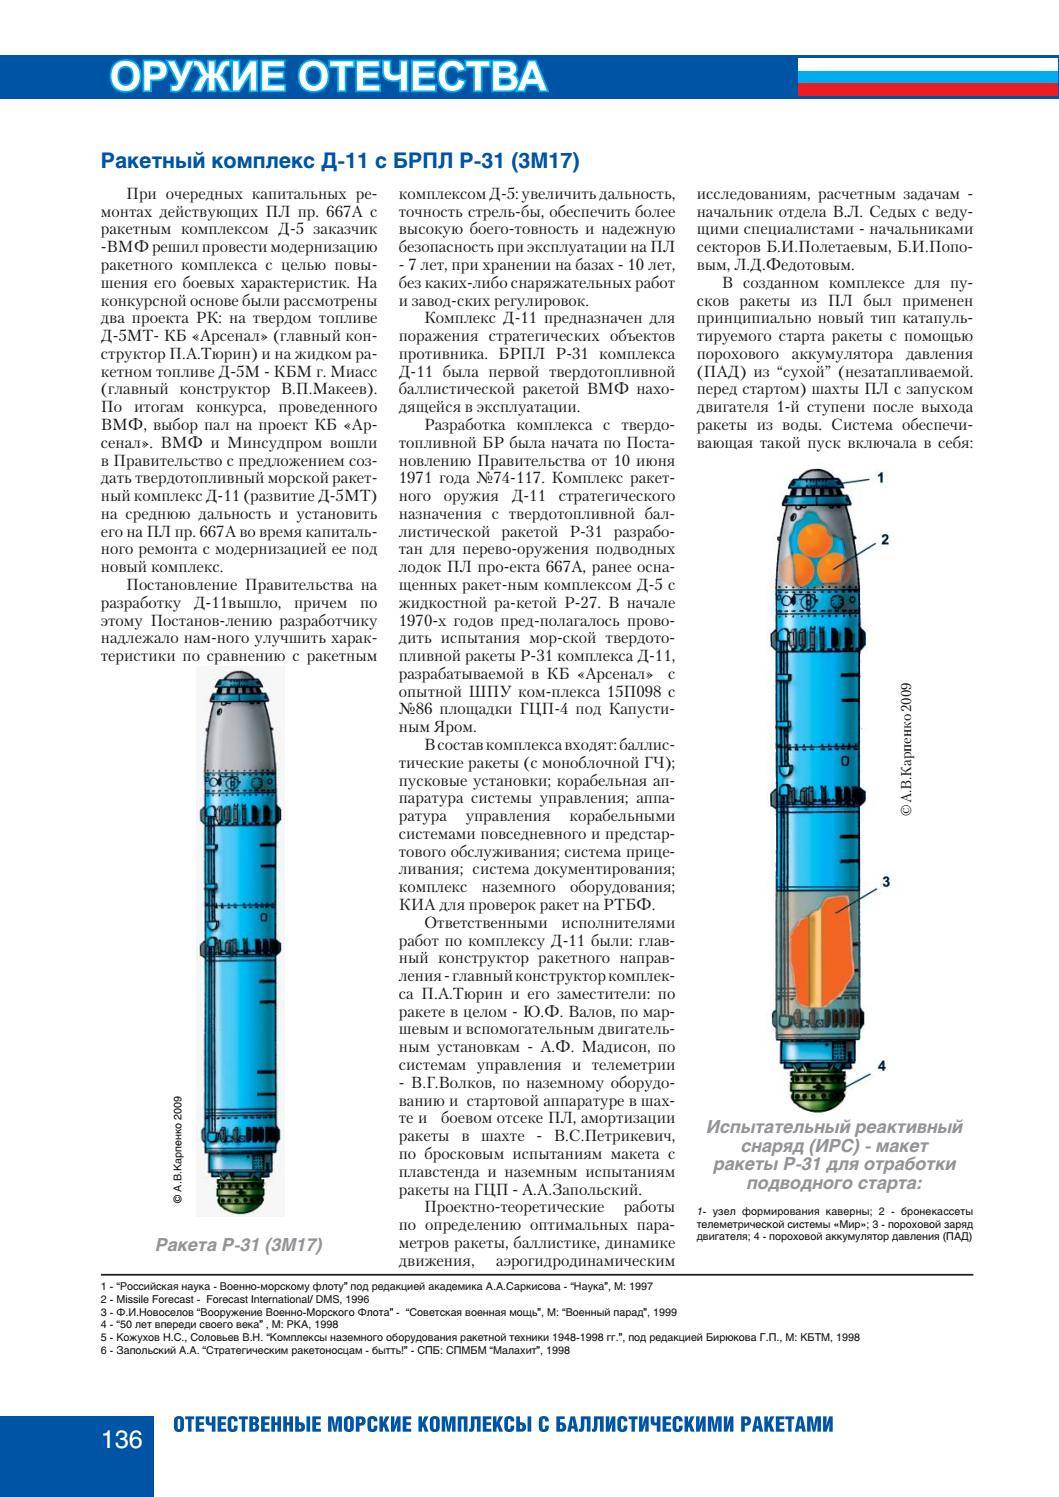 Р-21 (ракета)